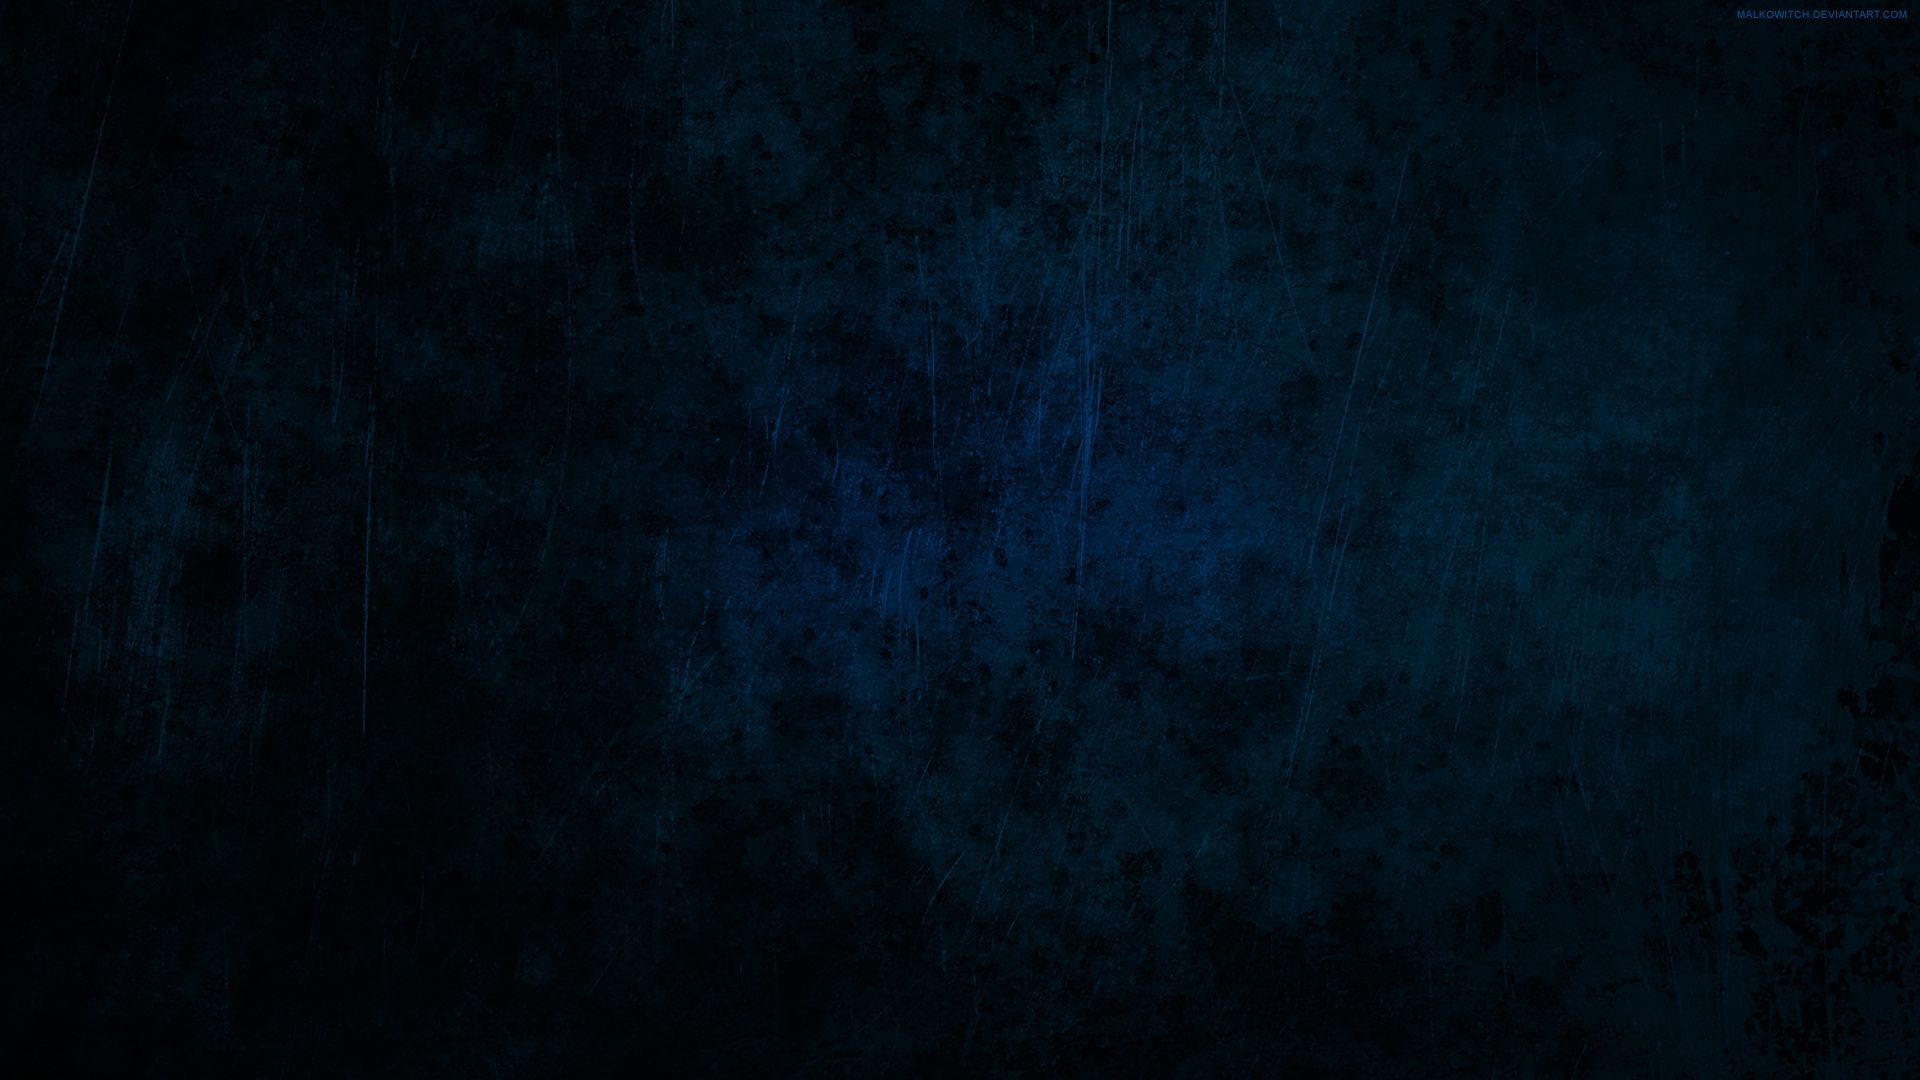 Dark Wallpaper Qhd. Dark blue wallpaper, Blue wallpaper, Dark